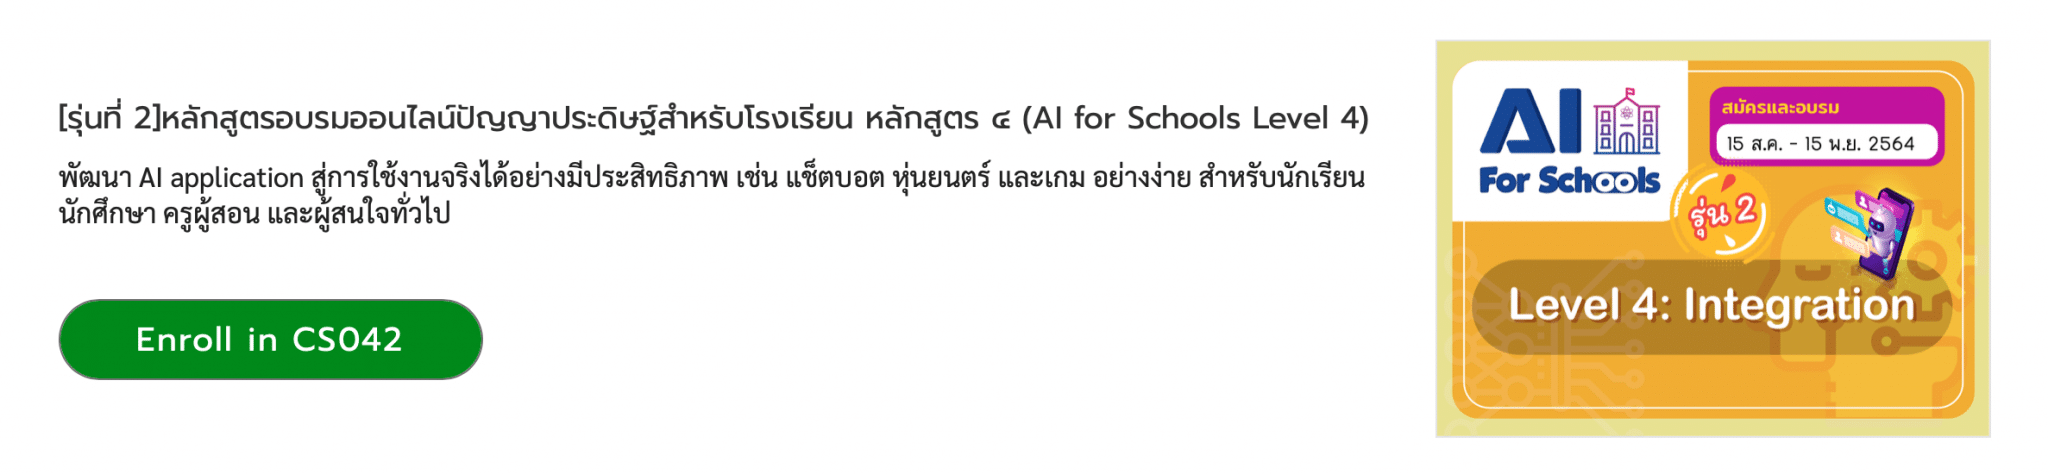 สสวท.เปิดอบรมออนไลน์หลักสูตร "AI For Schools Level 4" รุ่น 2 รับใบประกาศฟรี!! สมัครได้ตั้งแต่ 15 สิงหาคม – 15 พฤศจิกายน 2564 